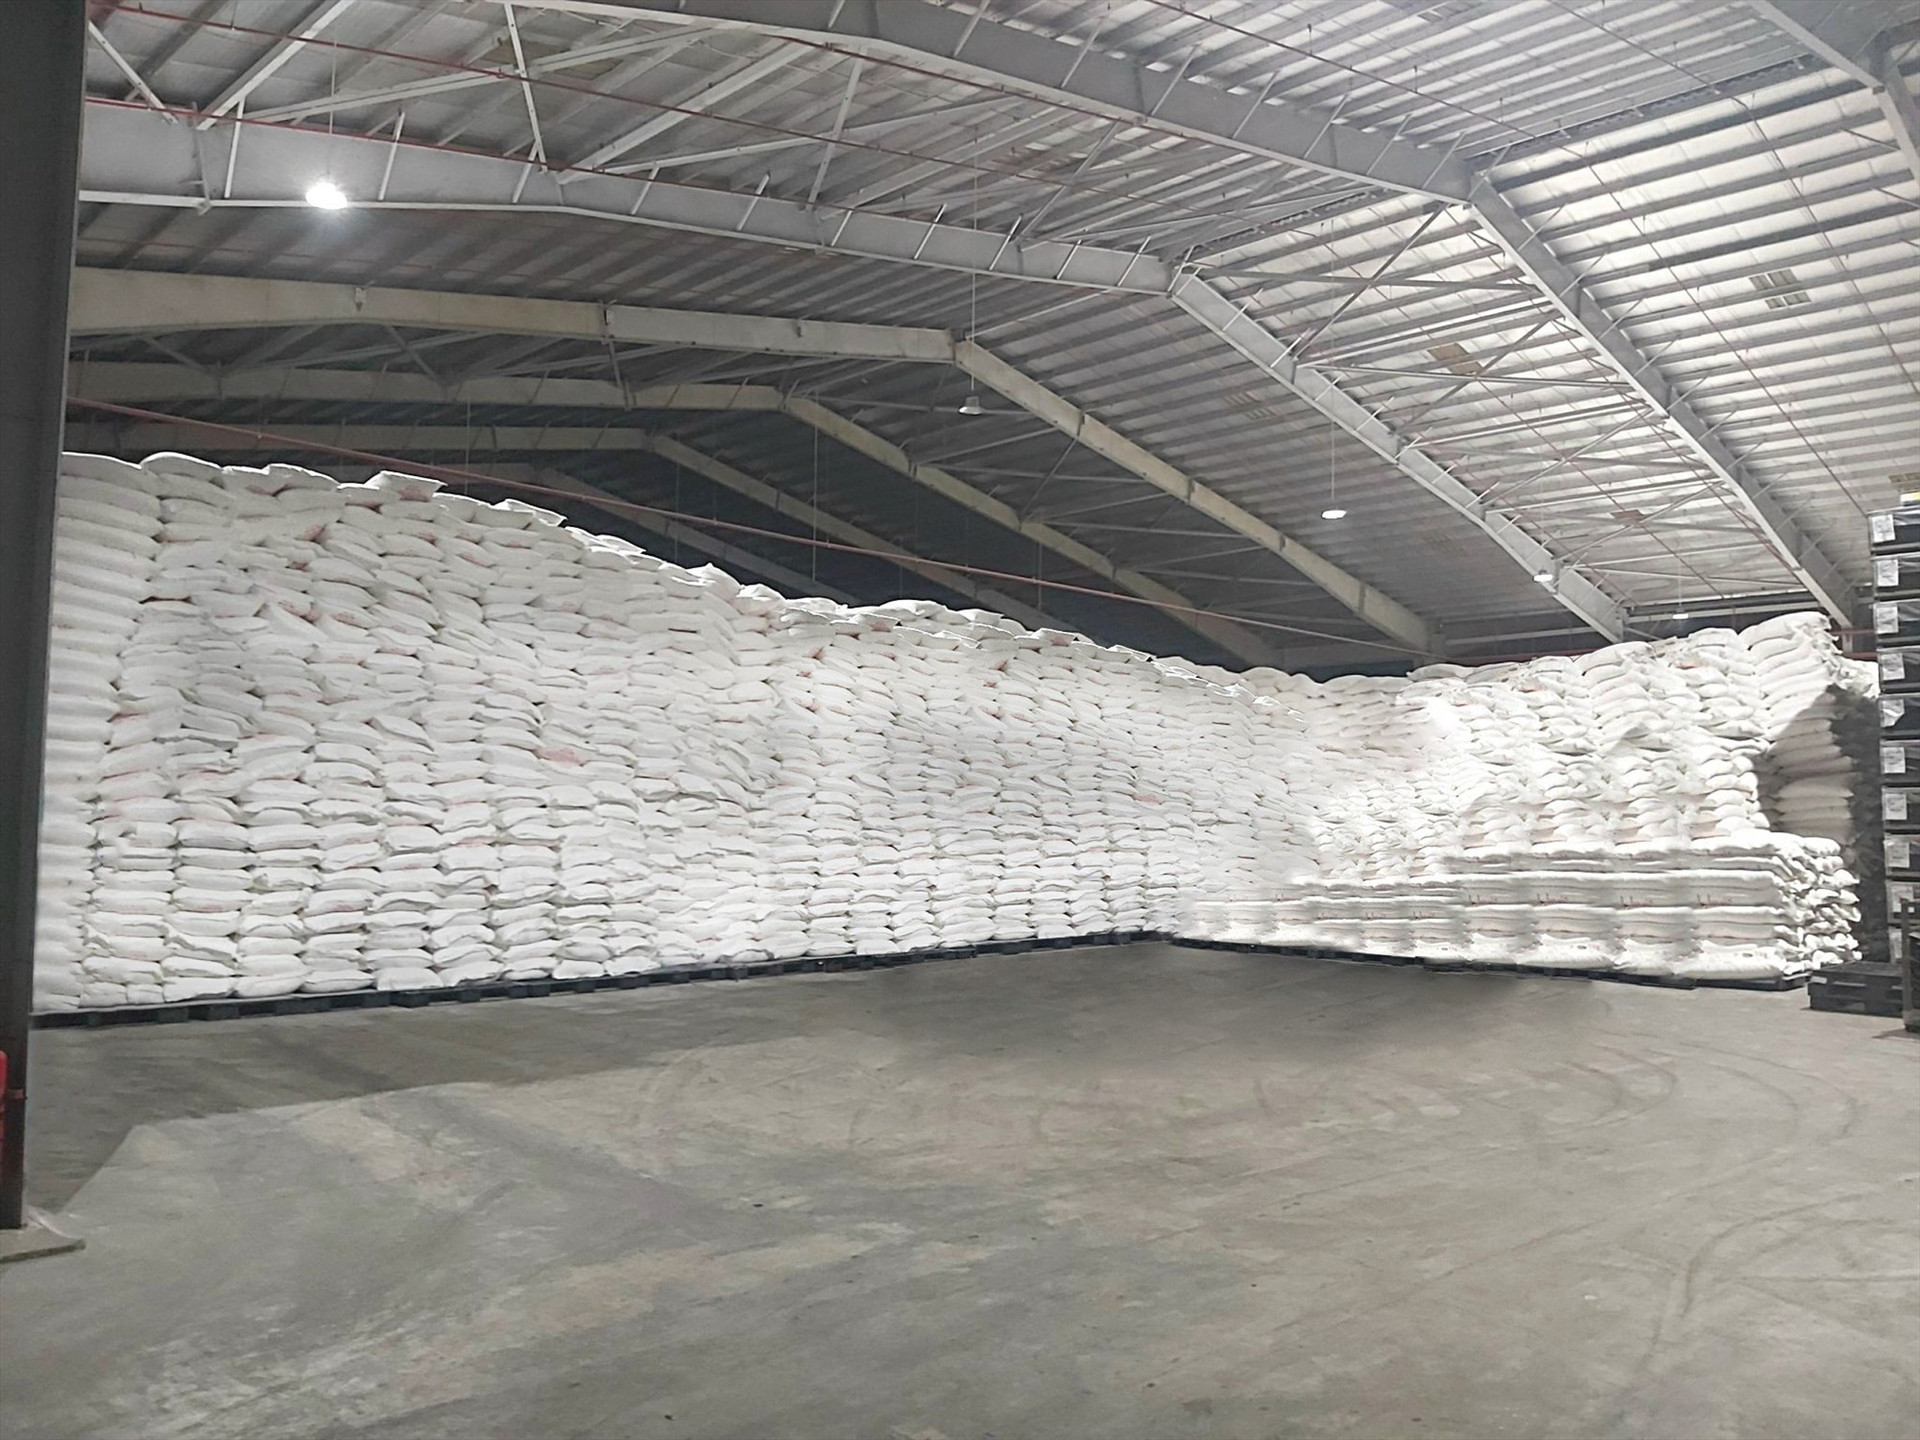 Công ty APFCO lưu trữ tinh bột sắn số lượng lớn tại cảng Chu Lai trước khi xuất khẩu.